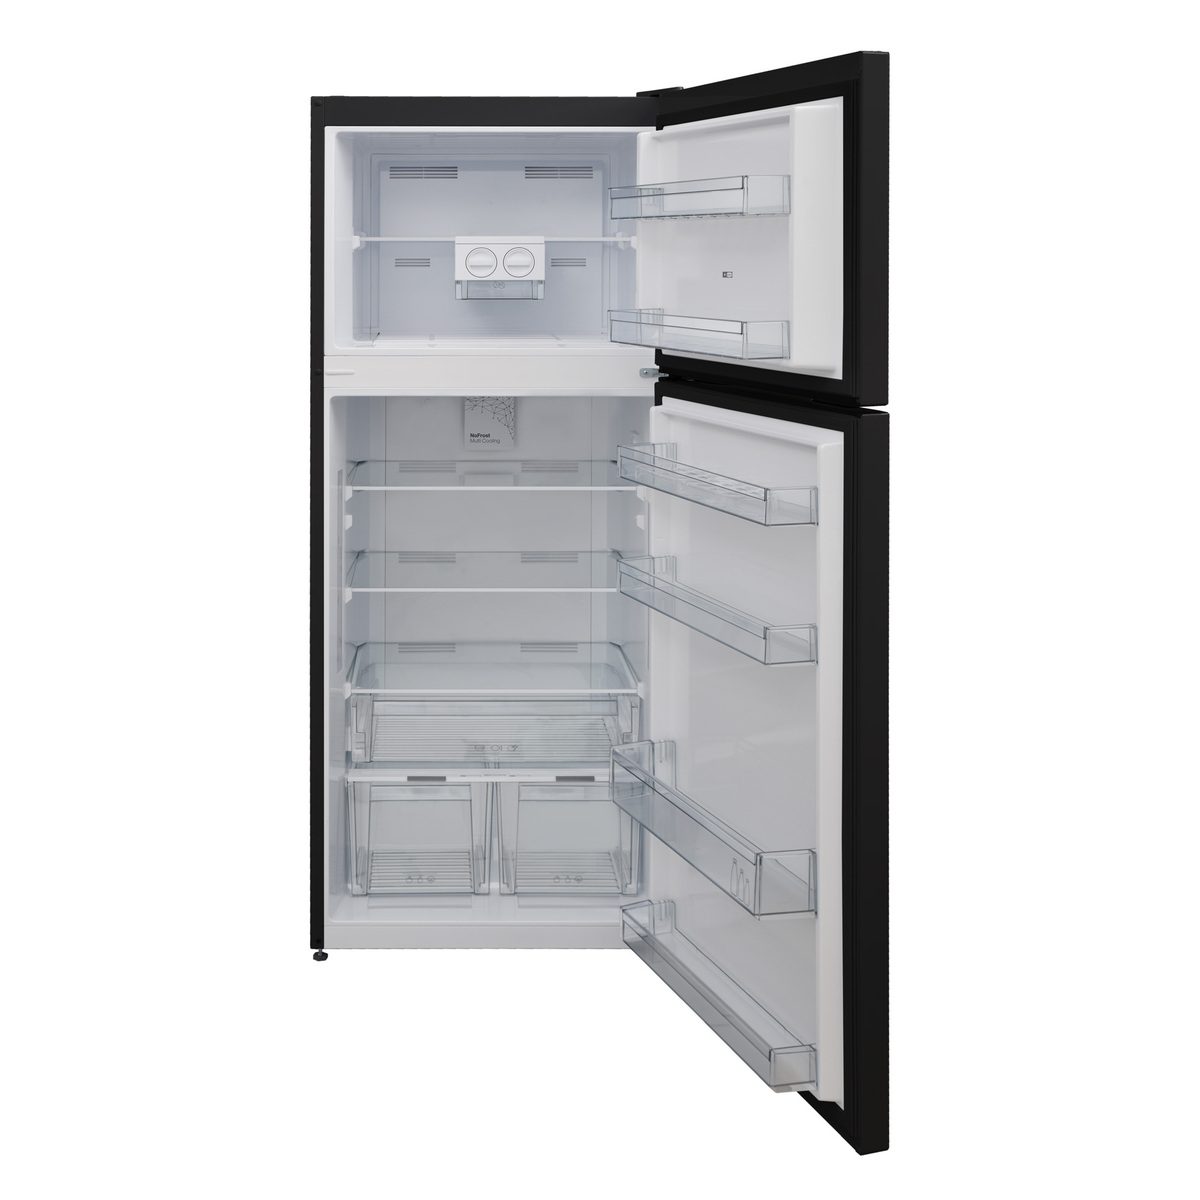 Ikon Double Door Refrigerator, 400 L, Dark Inox, IK-VRT400